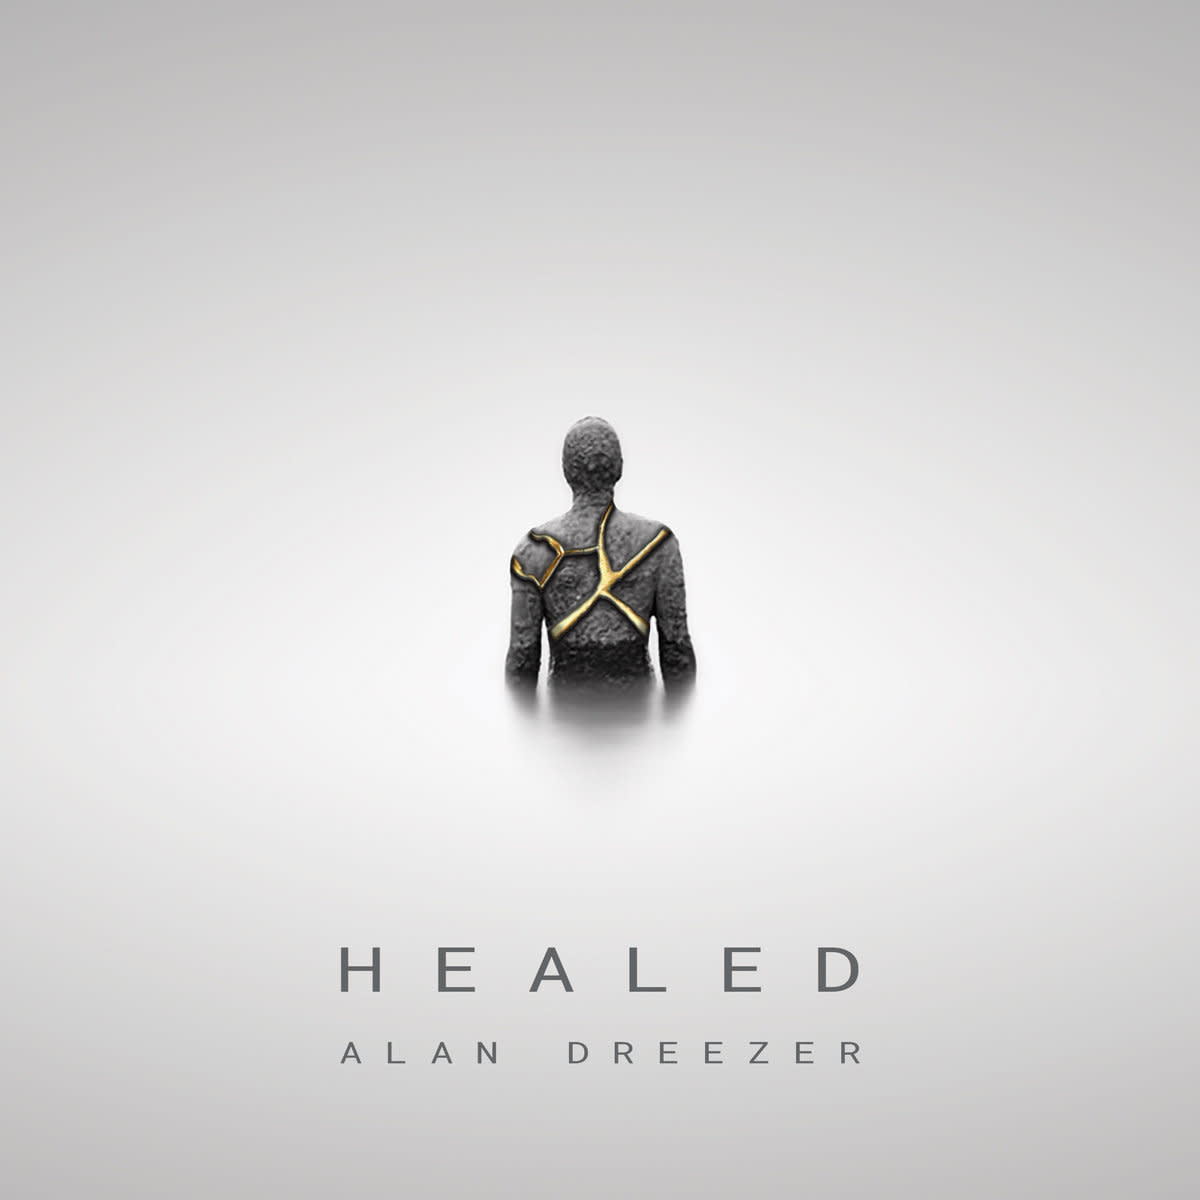 "Healed"